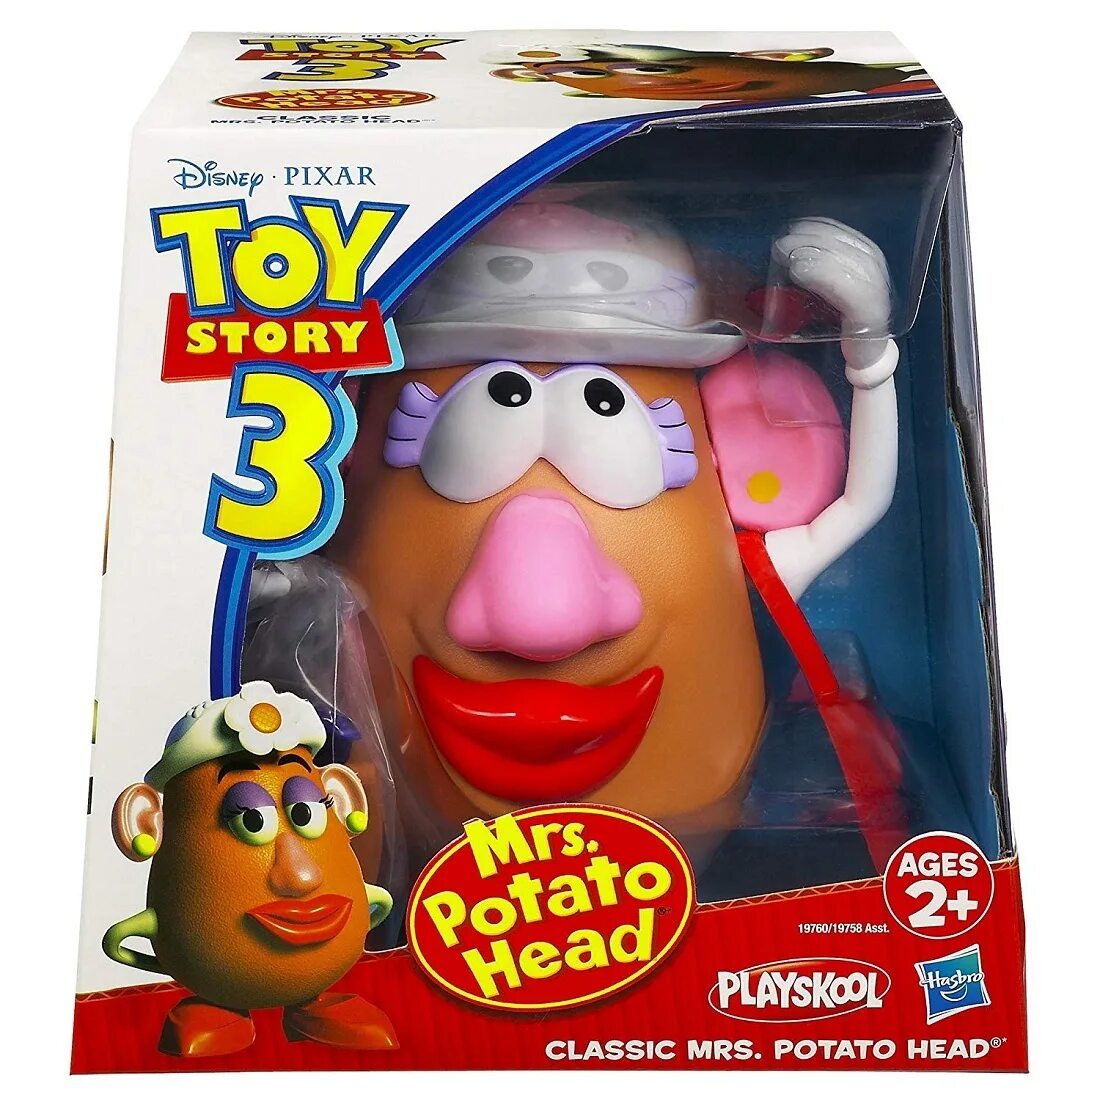 Купить головы игрушек. Мистер картофельная голова (Mr. Potato head) история игрушек 3, Hasbro 2010. Mr Potato head игрушка. Toy story Playskool игрушка. Toy story collection картофельная голова Мистер.